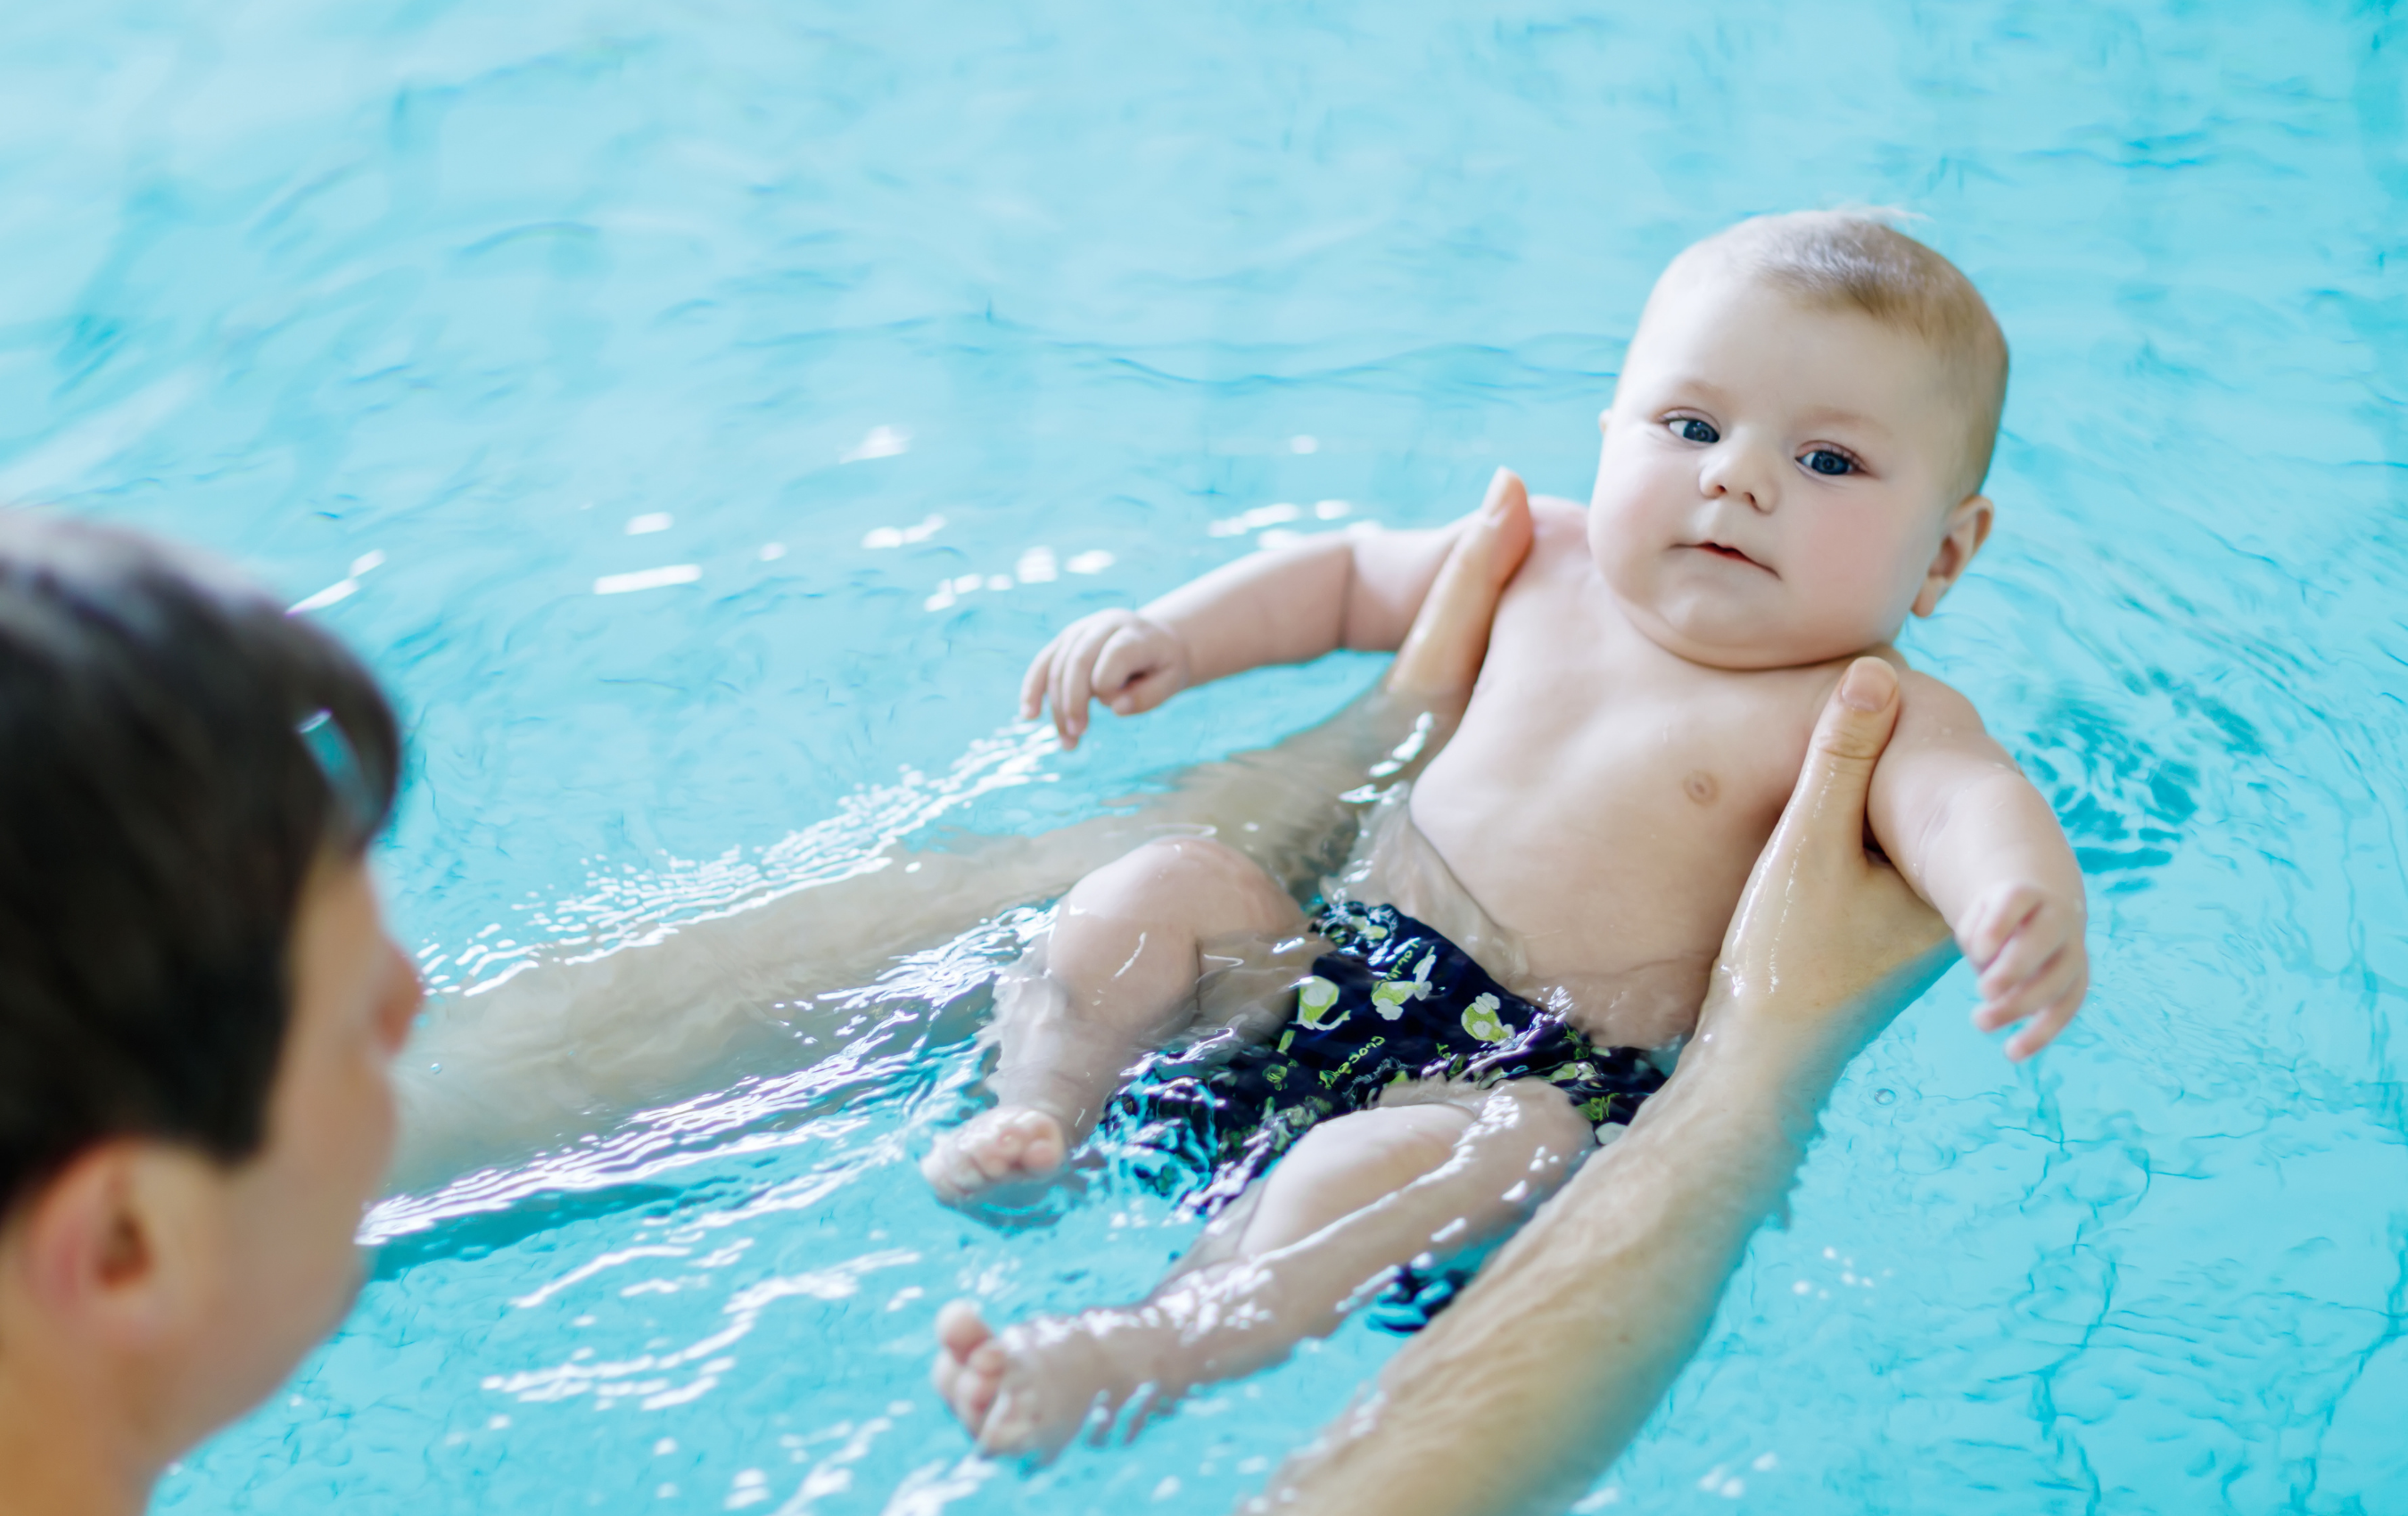 Quelles précautions prendre pour les premières baignades de bébé ?